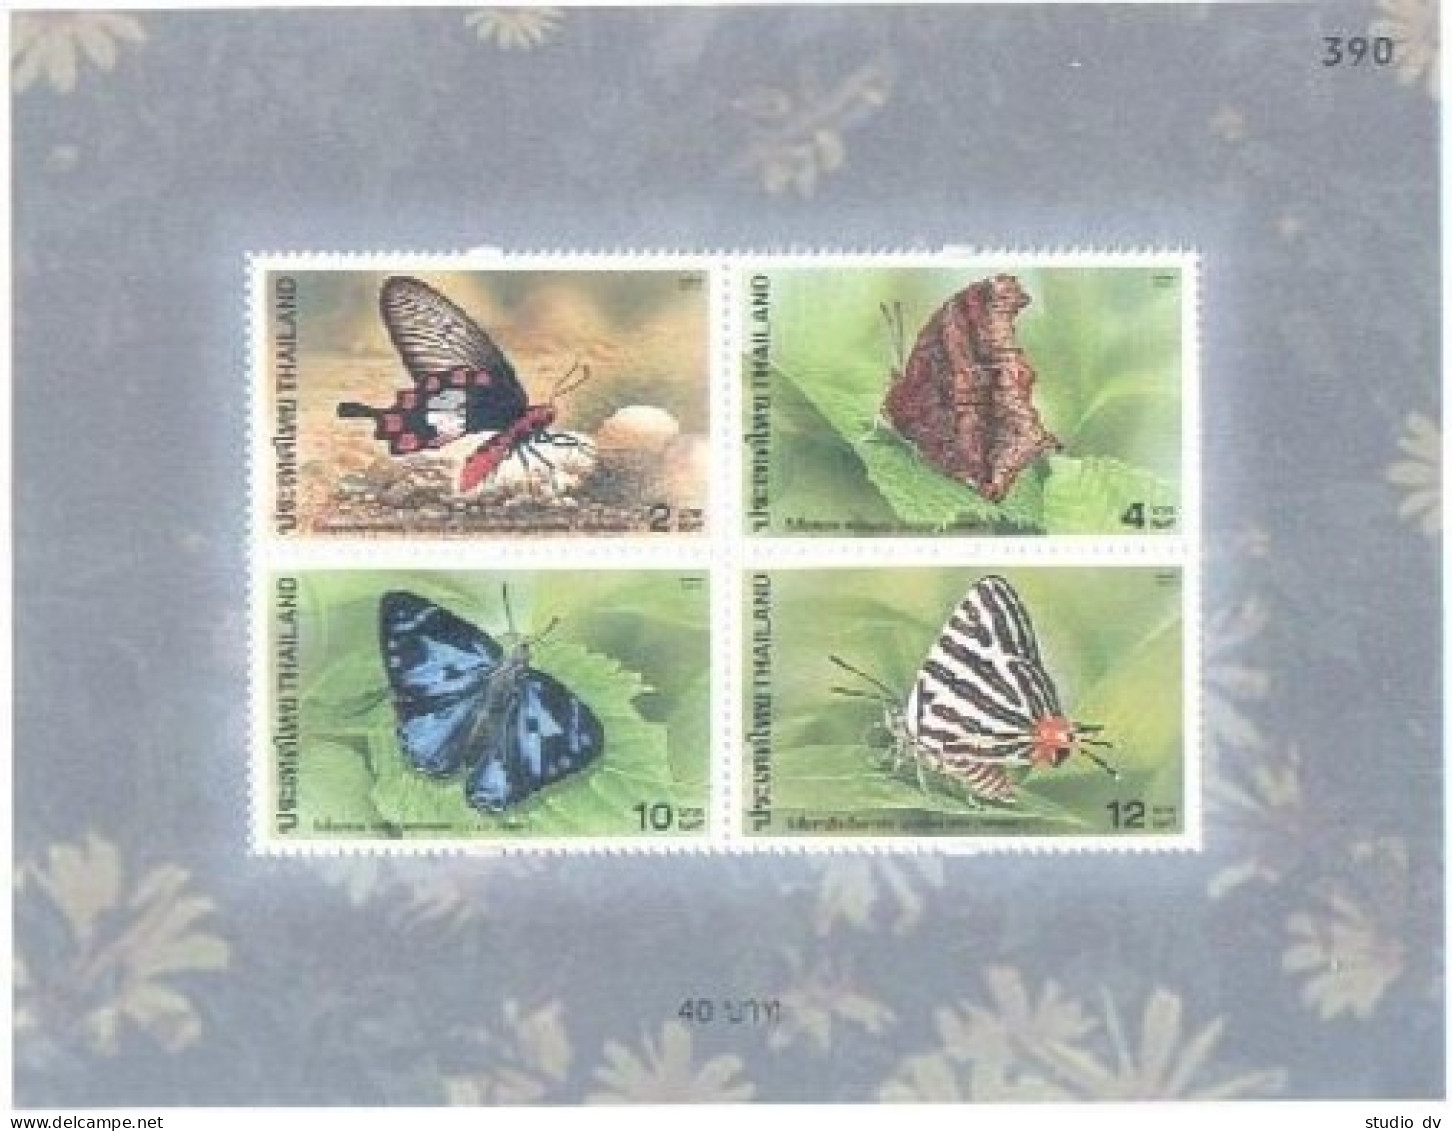 Thailand 1995a Sheet,MNH. Butterflies 2001. - Tailandia